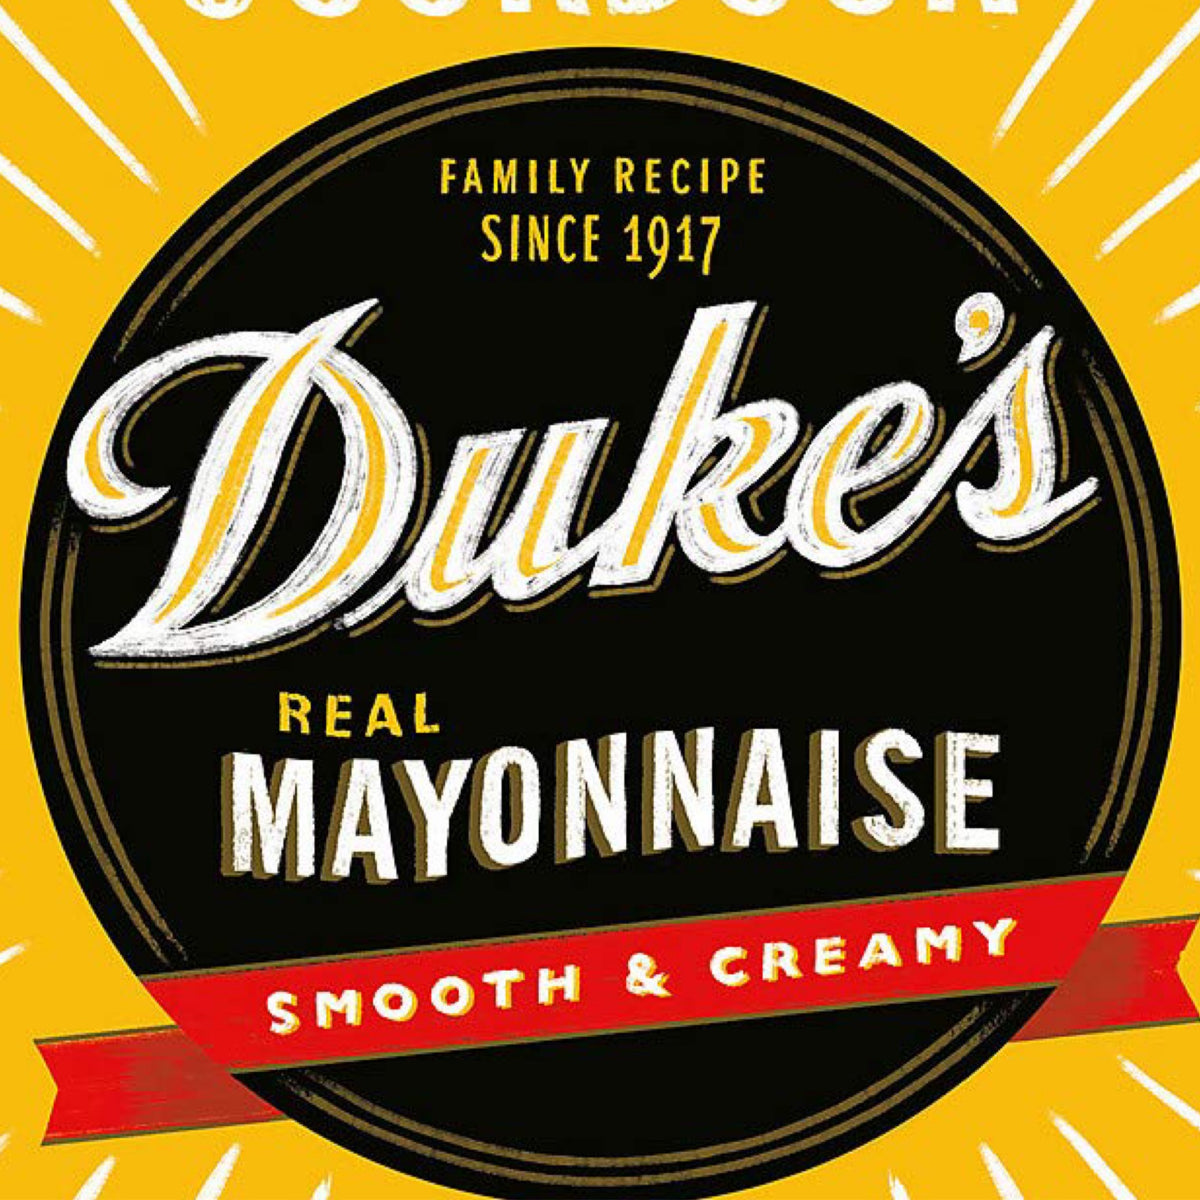 Dukes Mayonnaise Cookbook